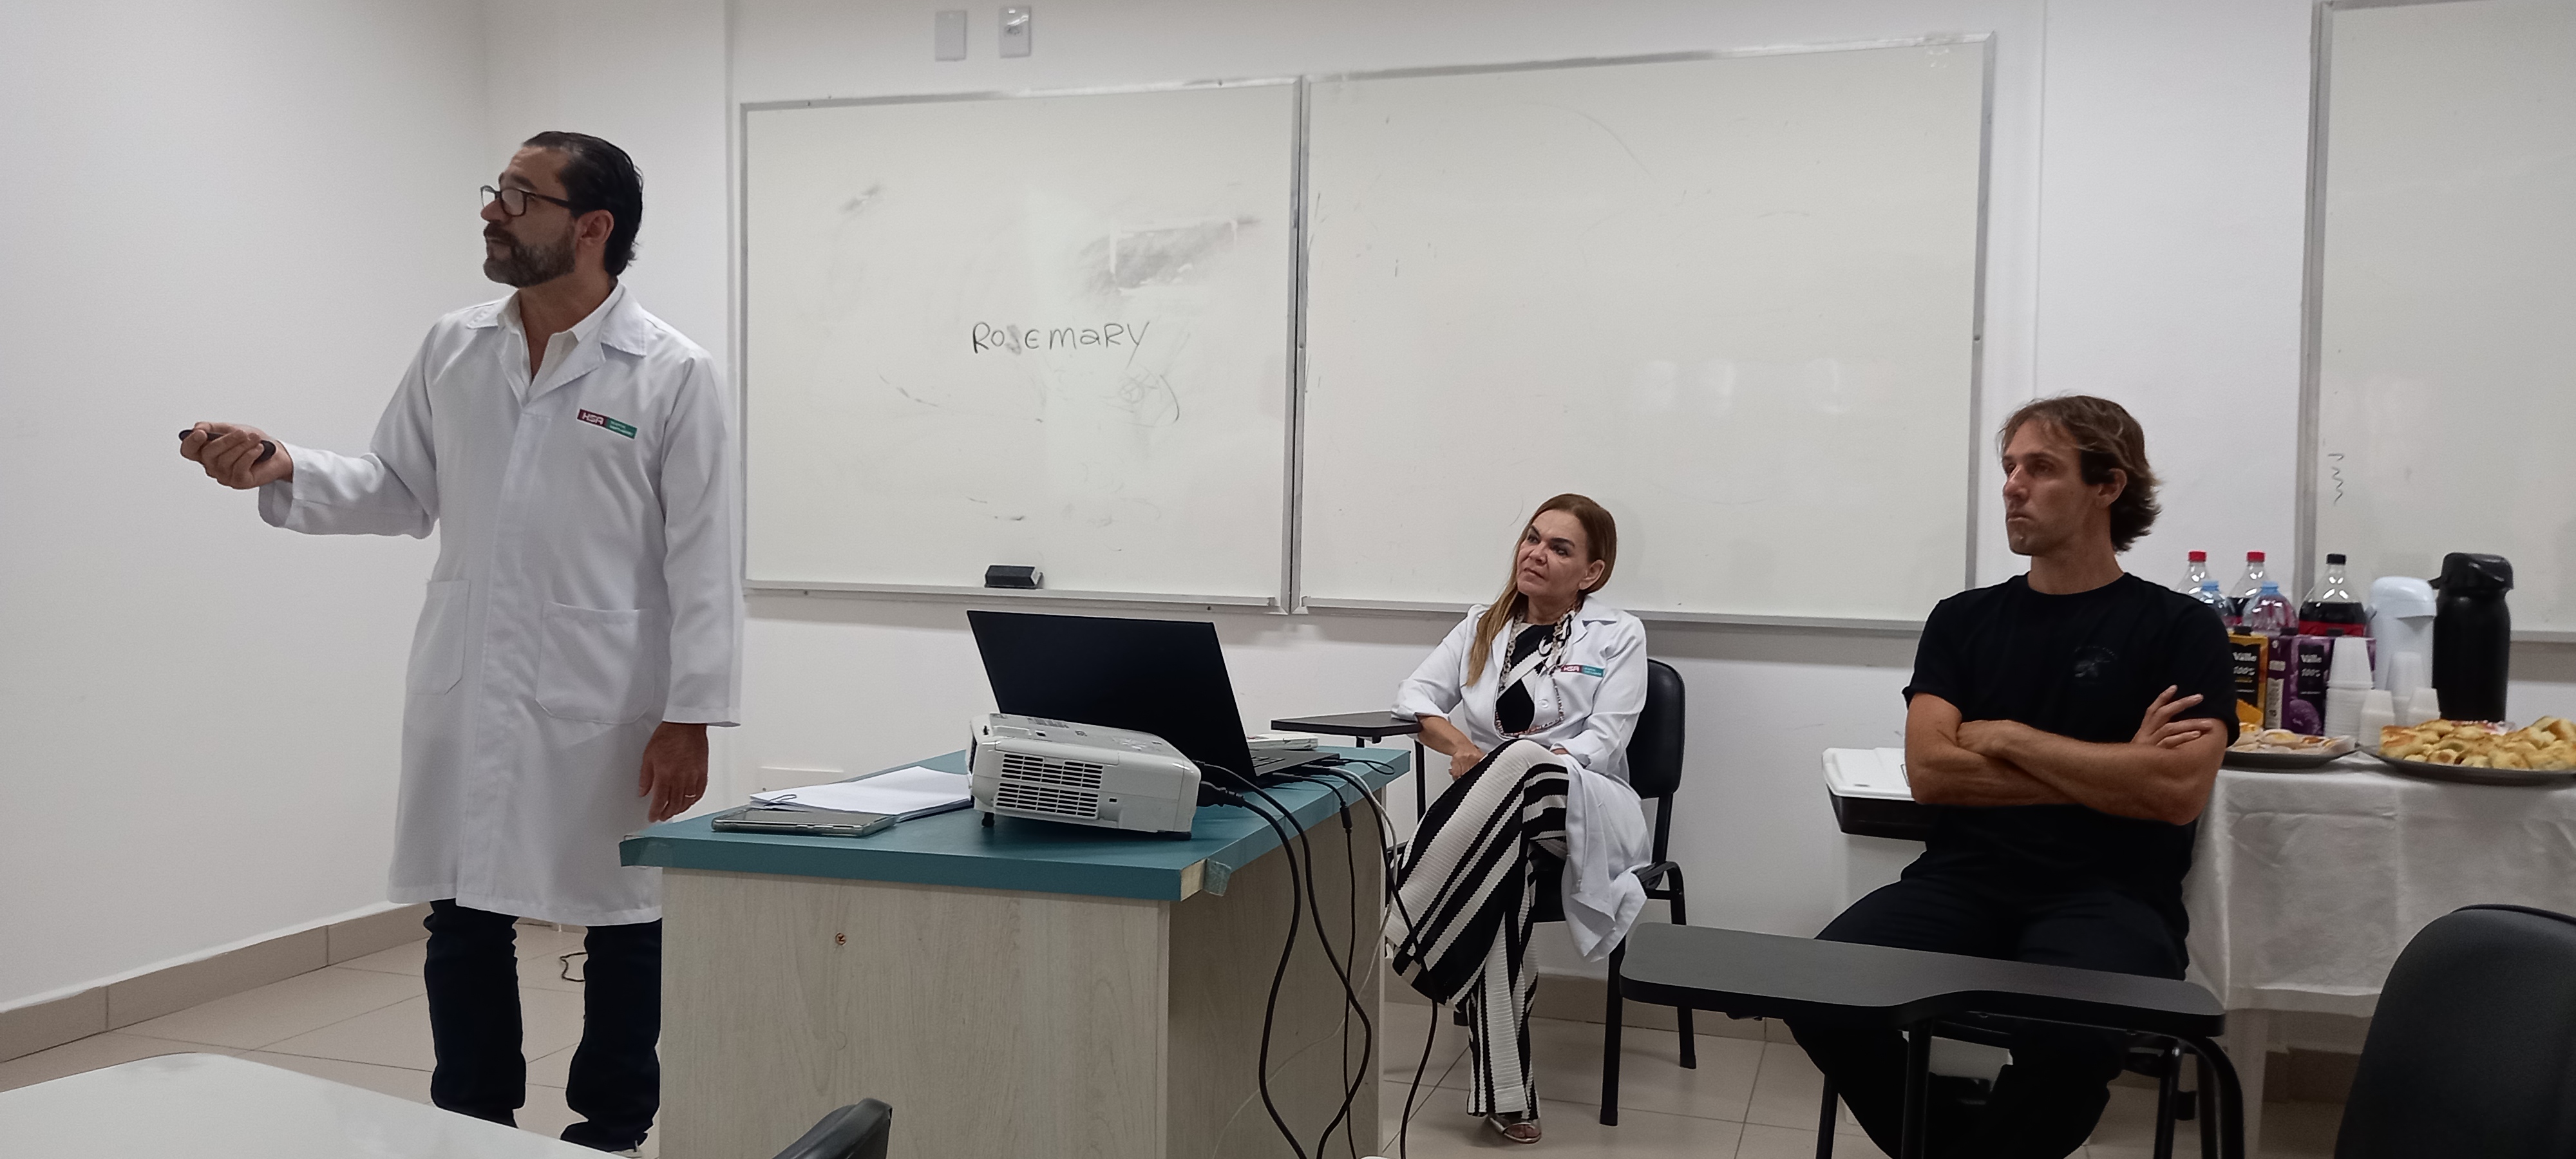 HSA forma primeira turma de residentes em anestesiologia do Guarujá | Hospital Santo Amaro